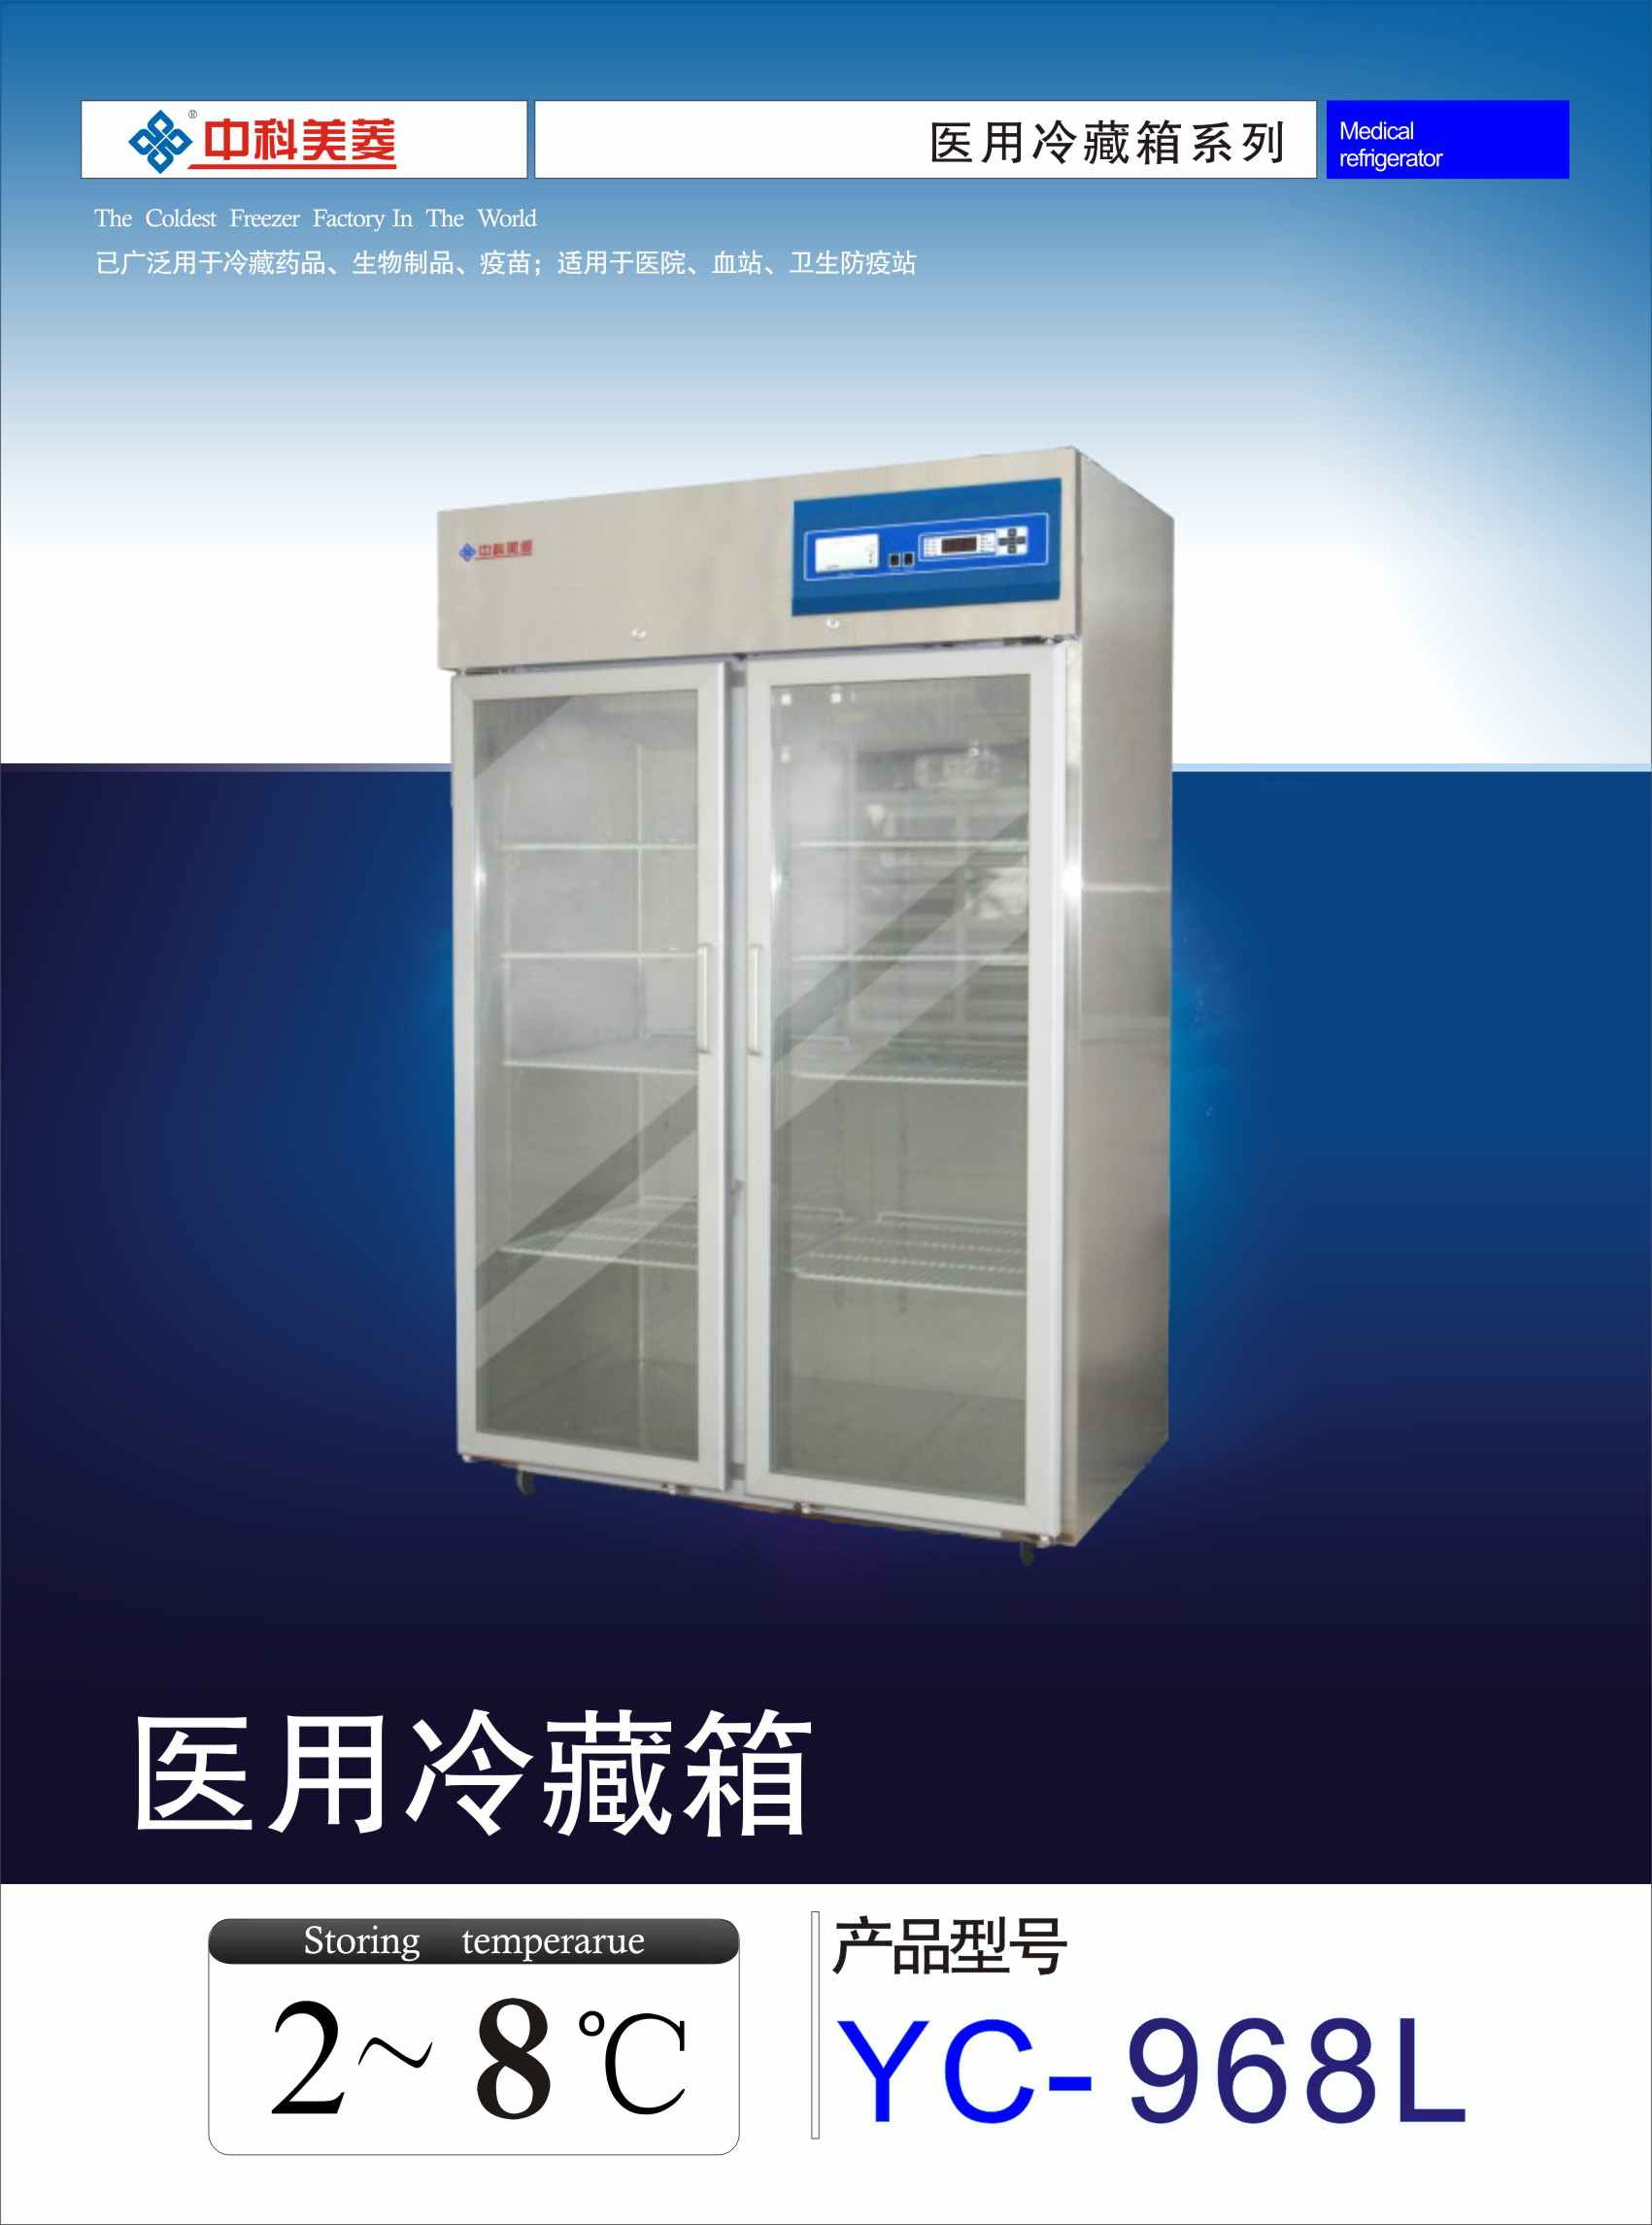 中科美菱 医用冷藏箱YC-968L